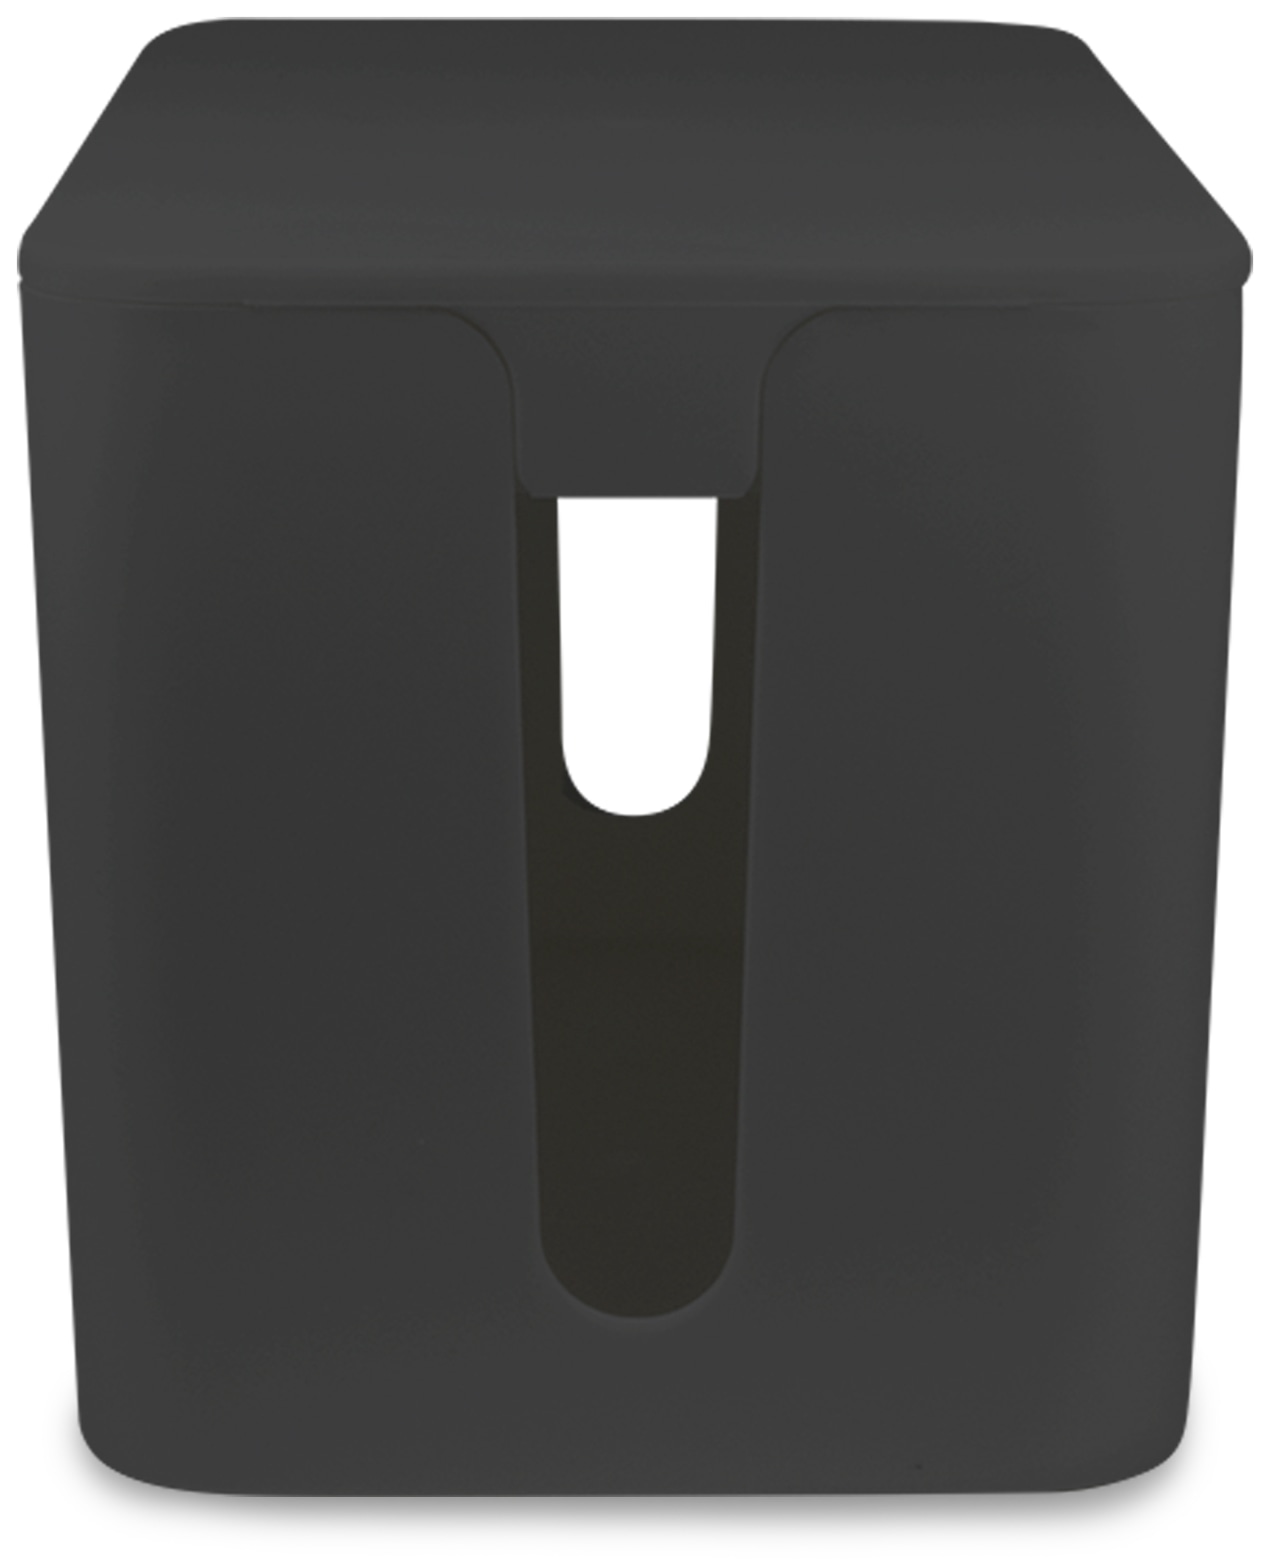 LOGILINK Kabelbox KAB0060, schwarz